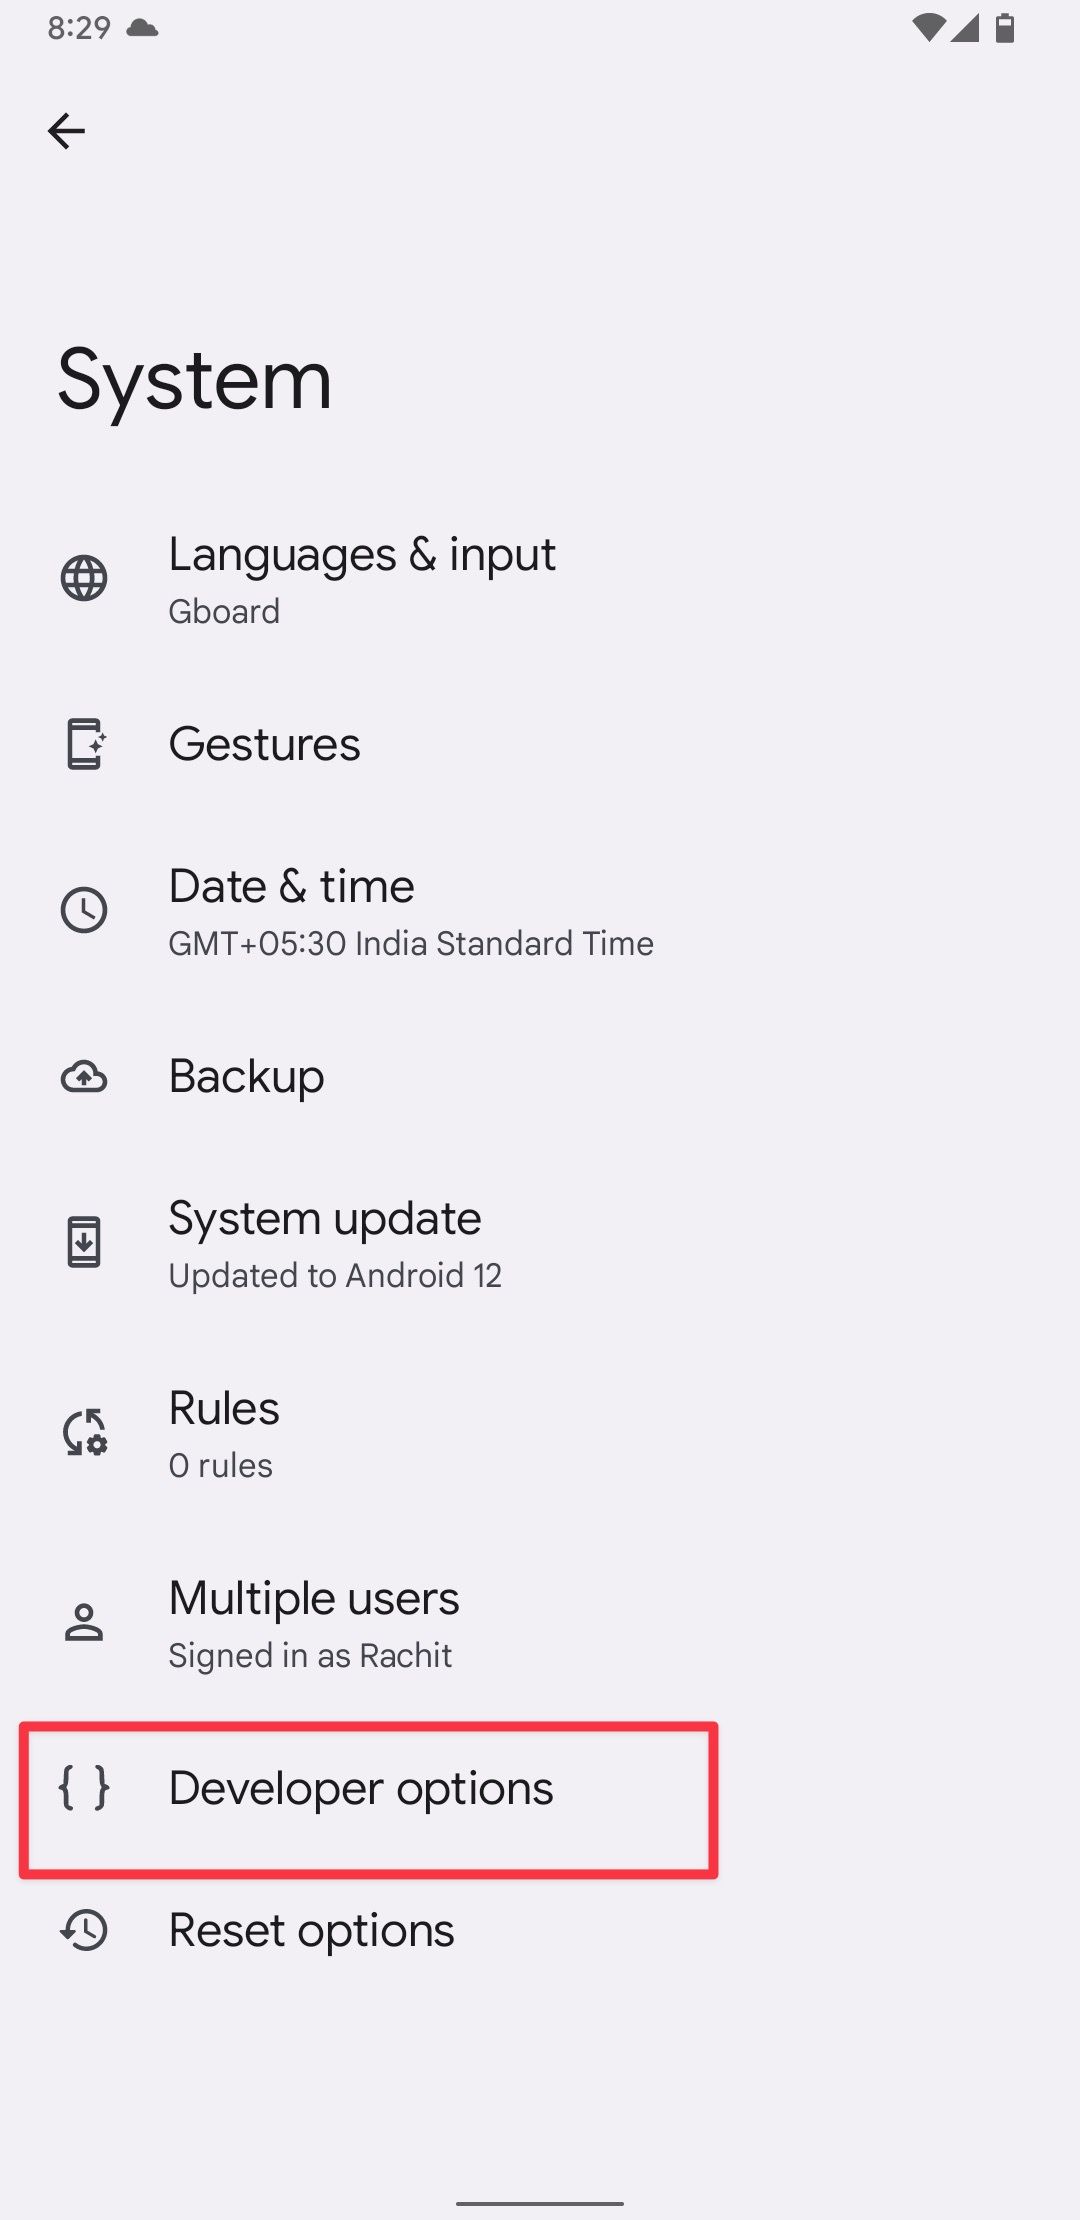 Captura de tela das configurações do Android mostrando as opções do desenvolvedor